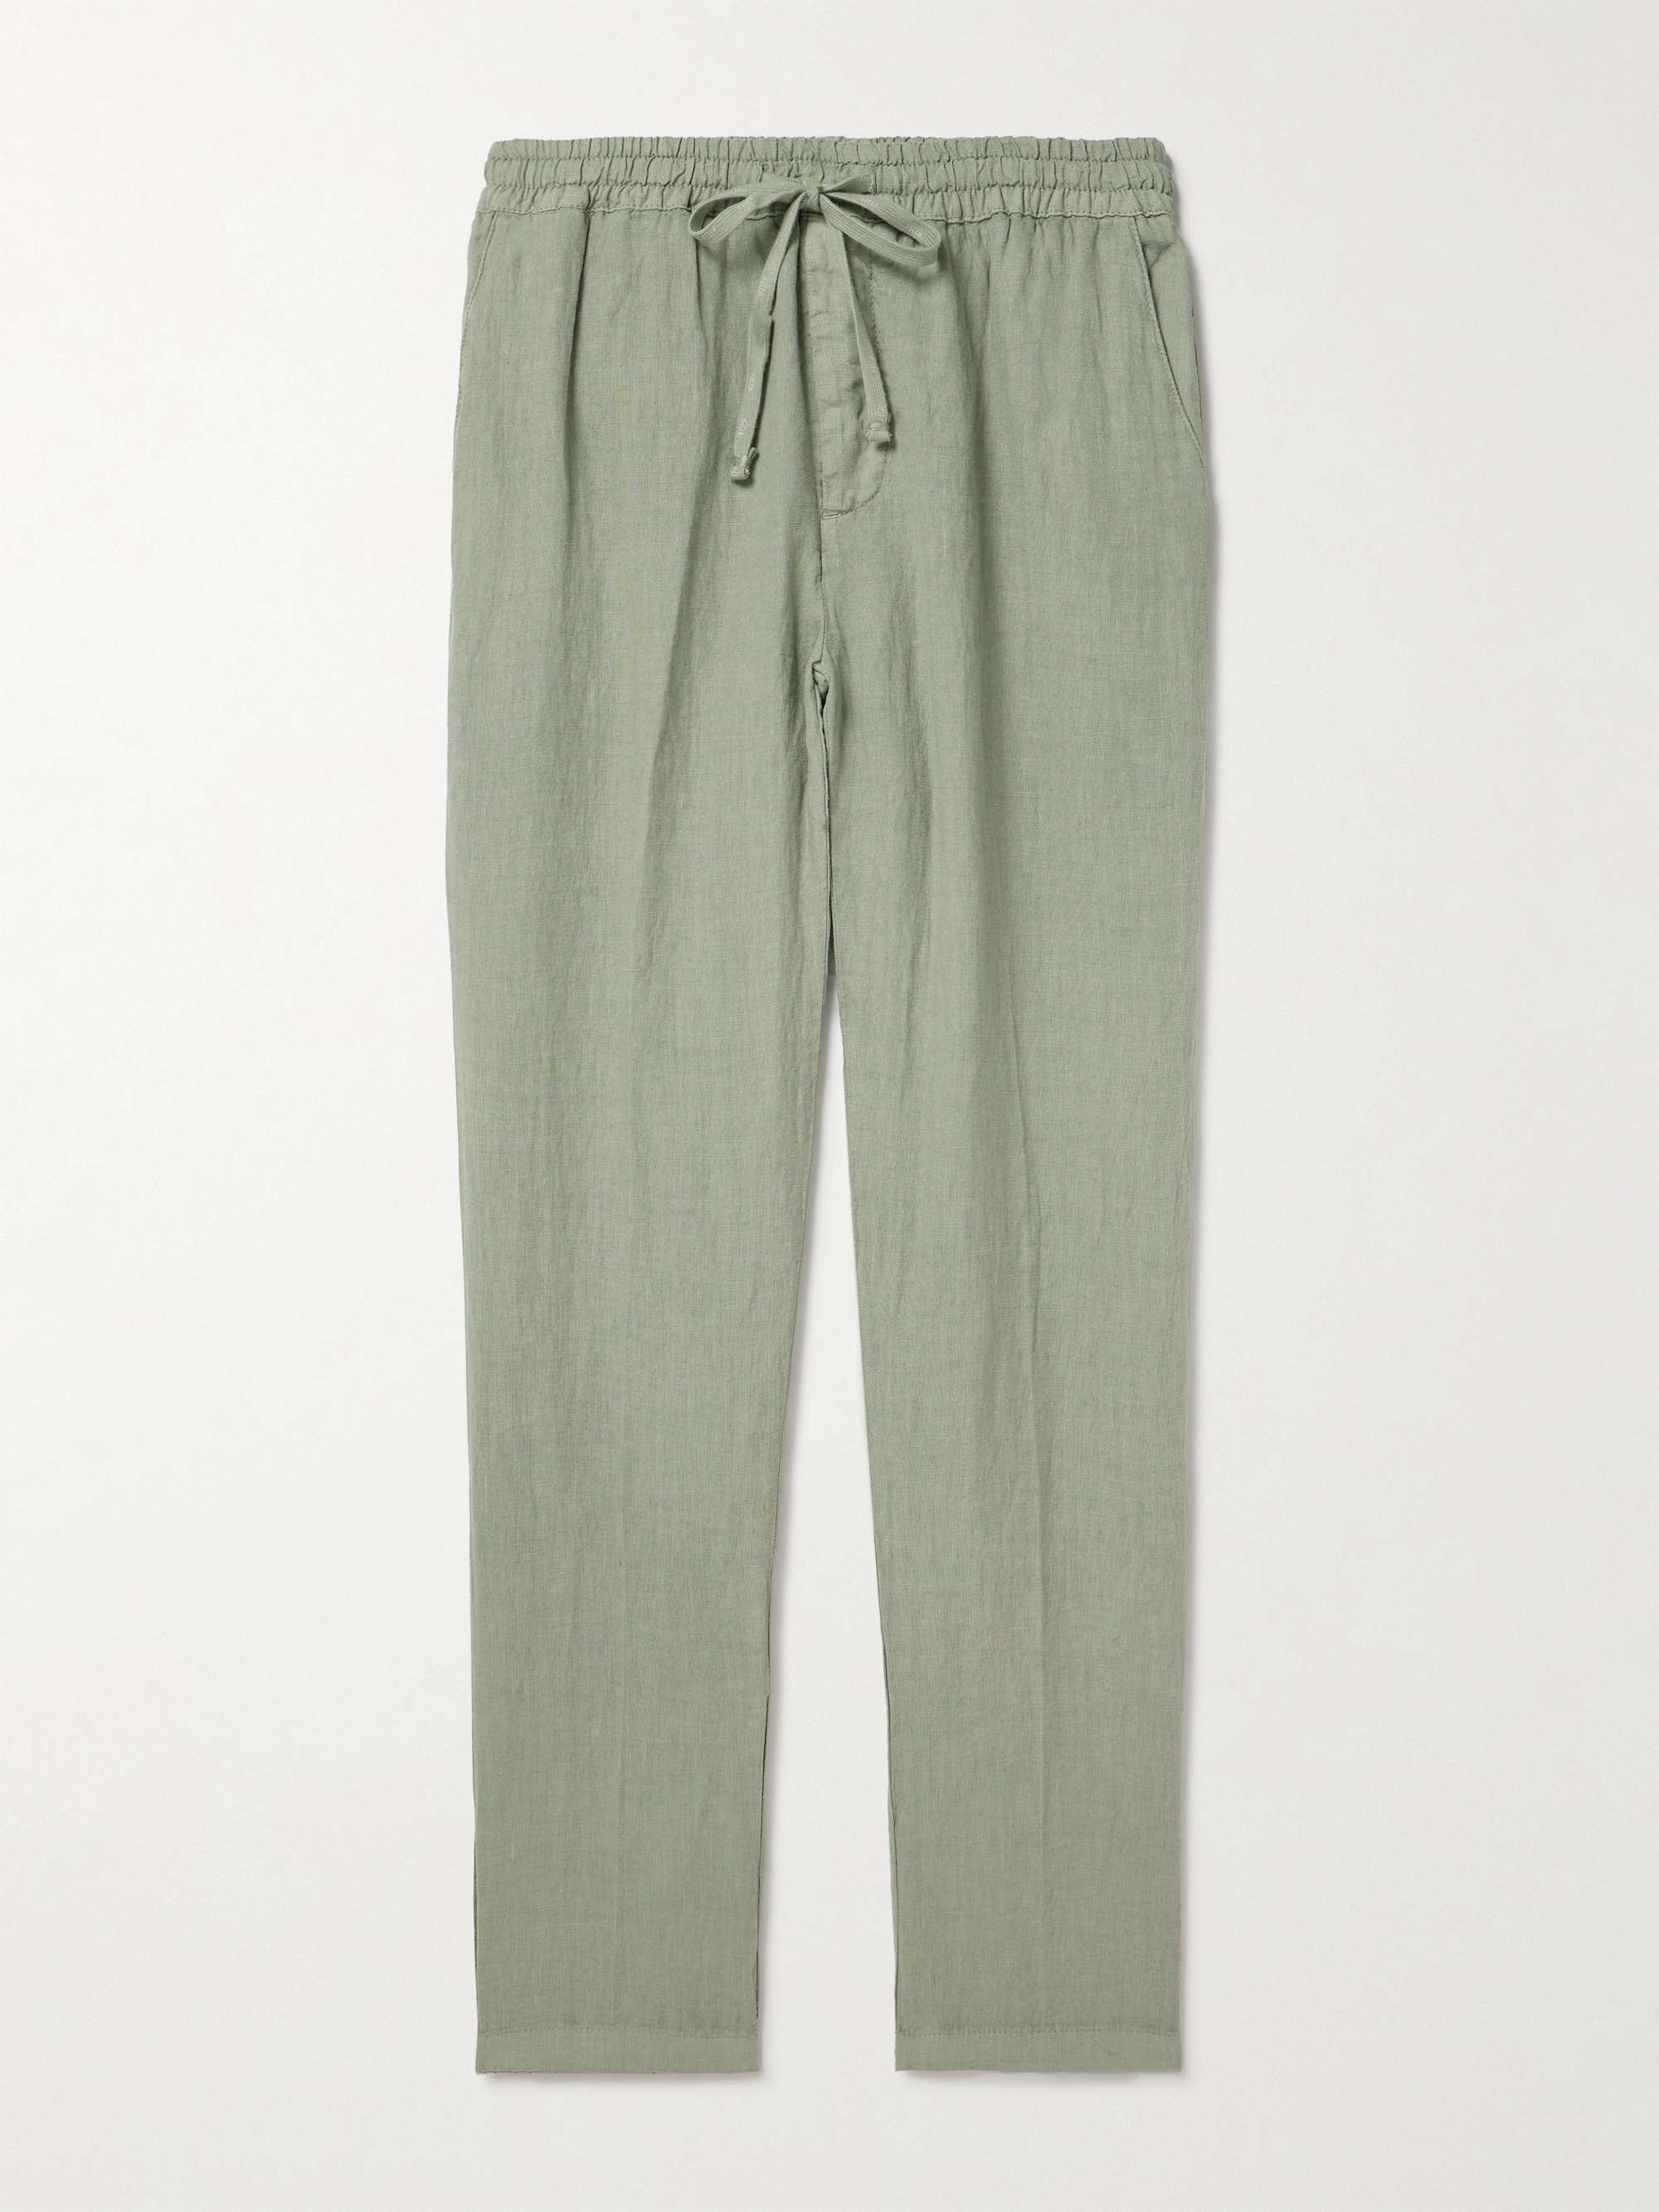 ALTEA Tapered Linen Drawstring Trousers for Men | MR PORTER